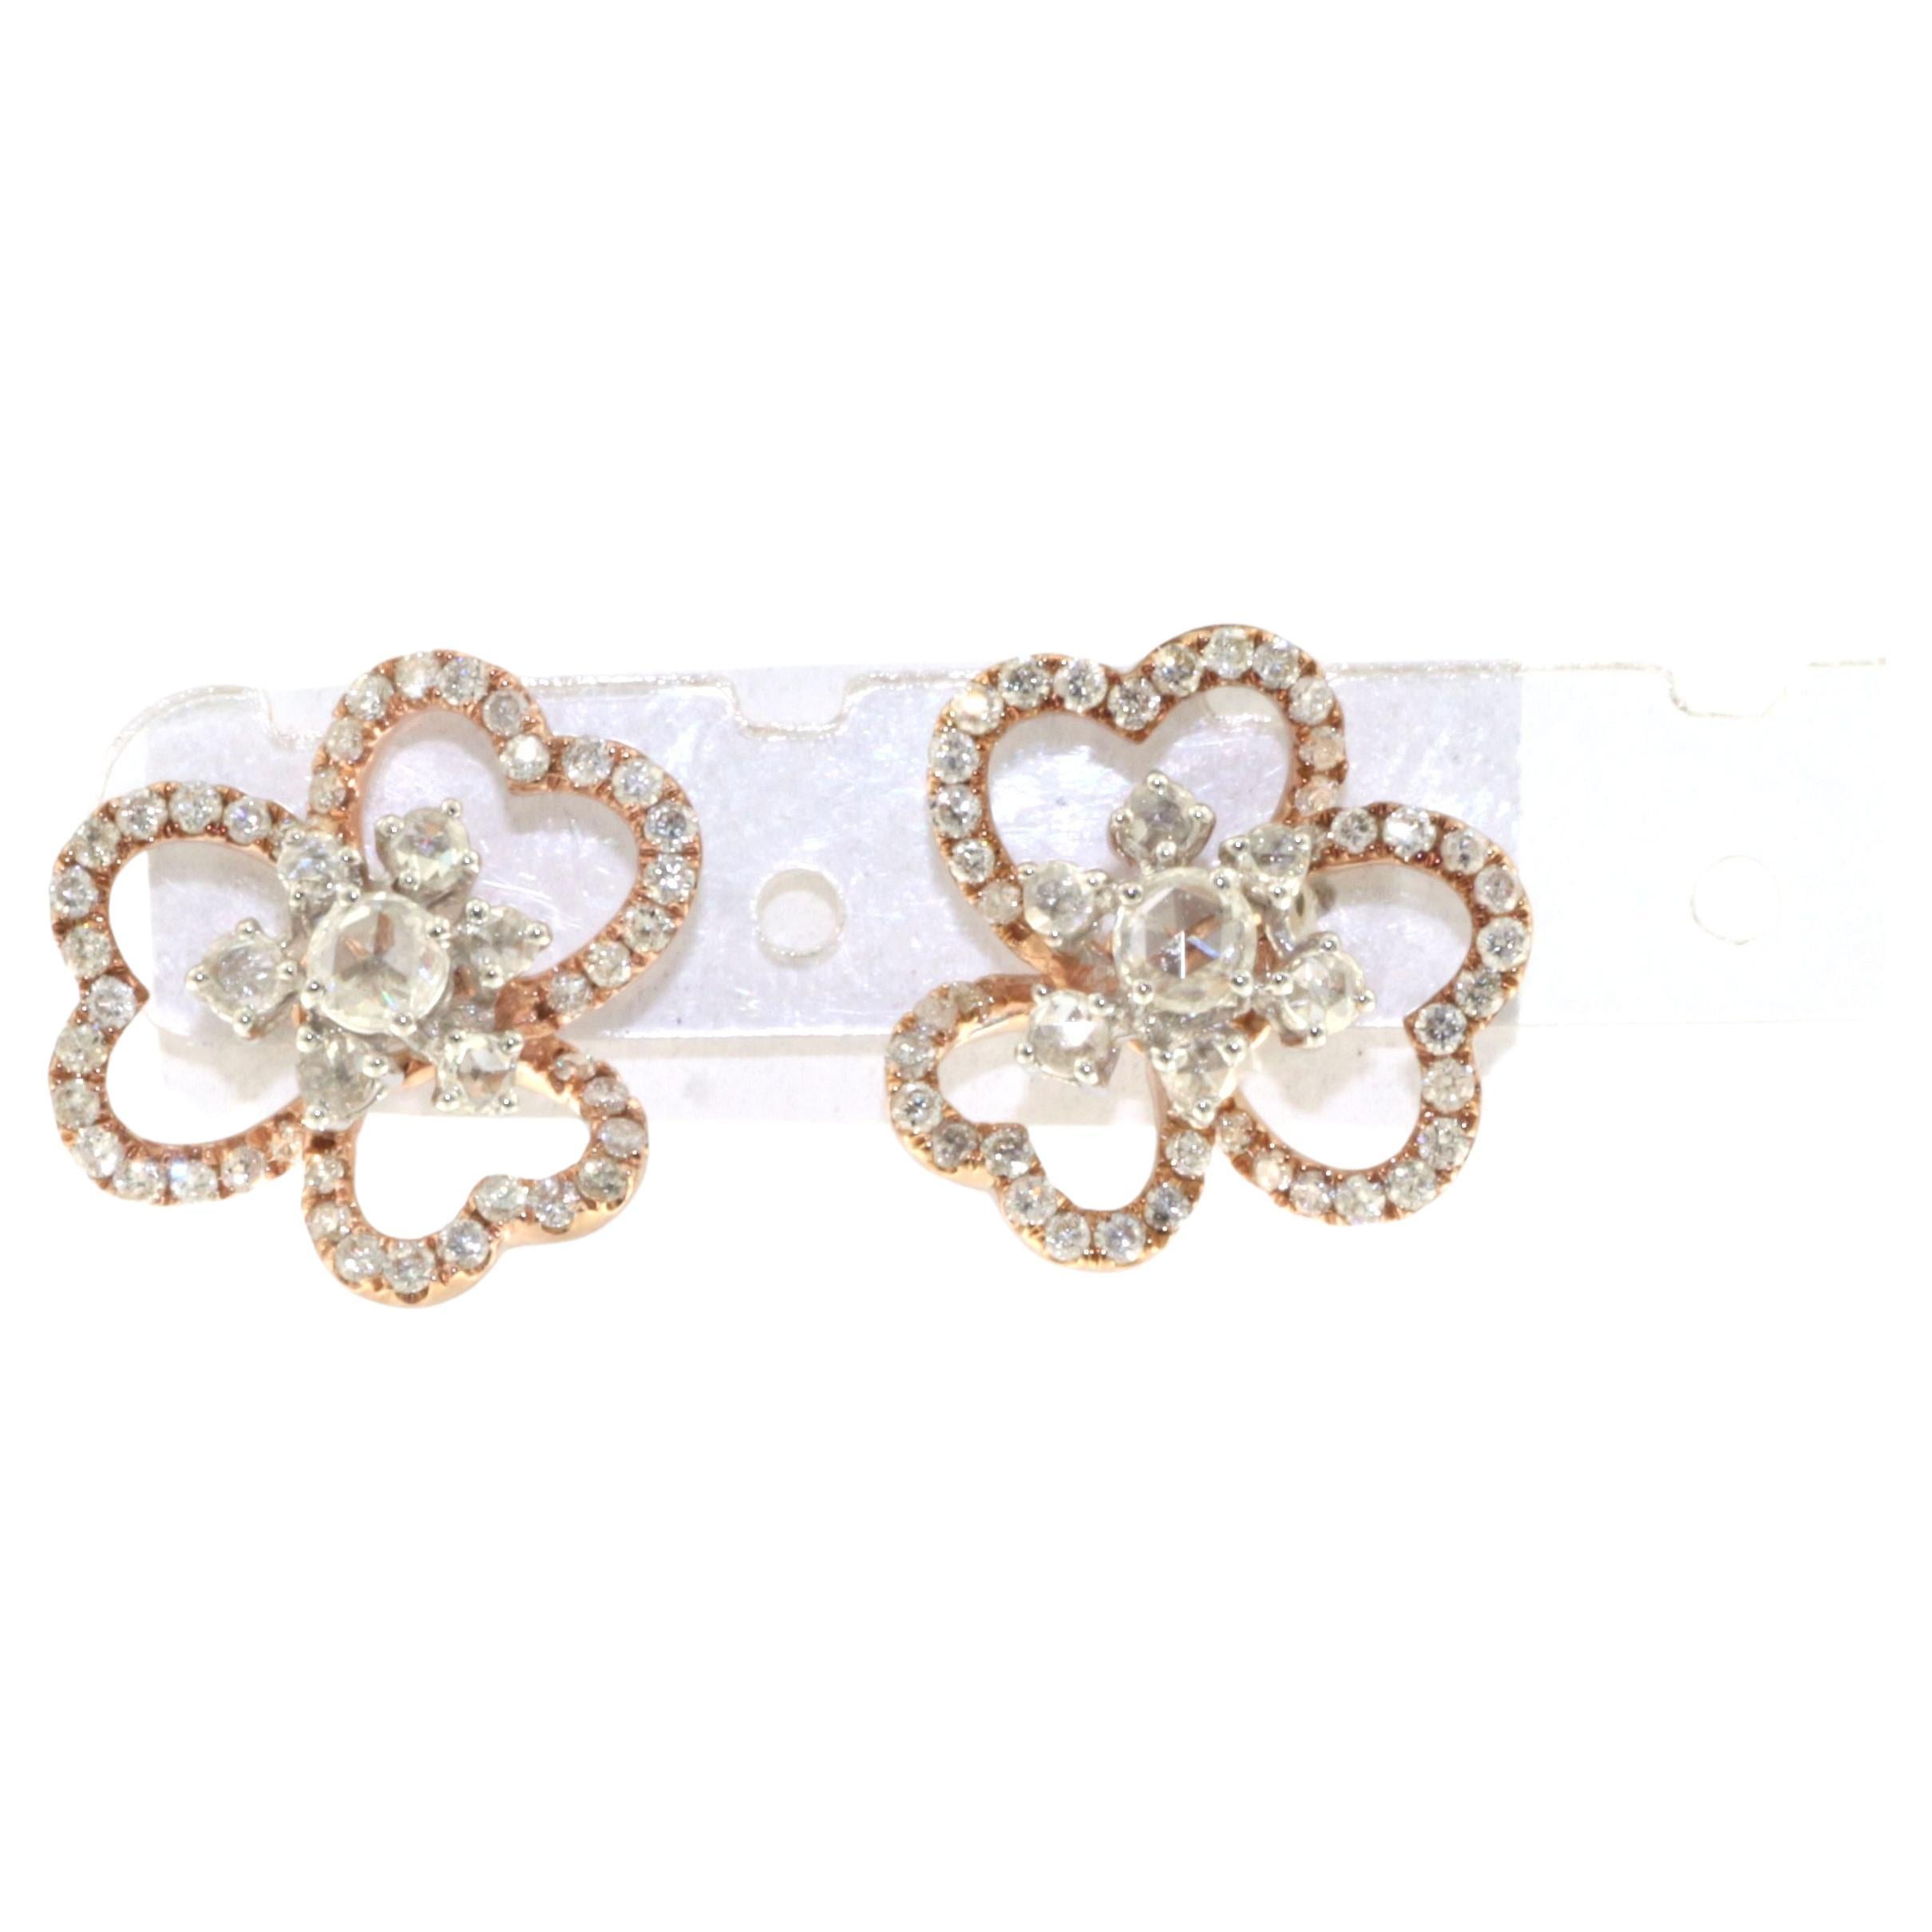 Rose Cut Diamond Flower Stud Earrings in 18K Rose and White Gold